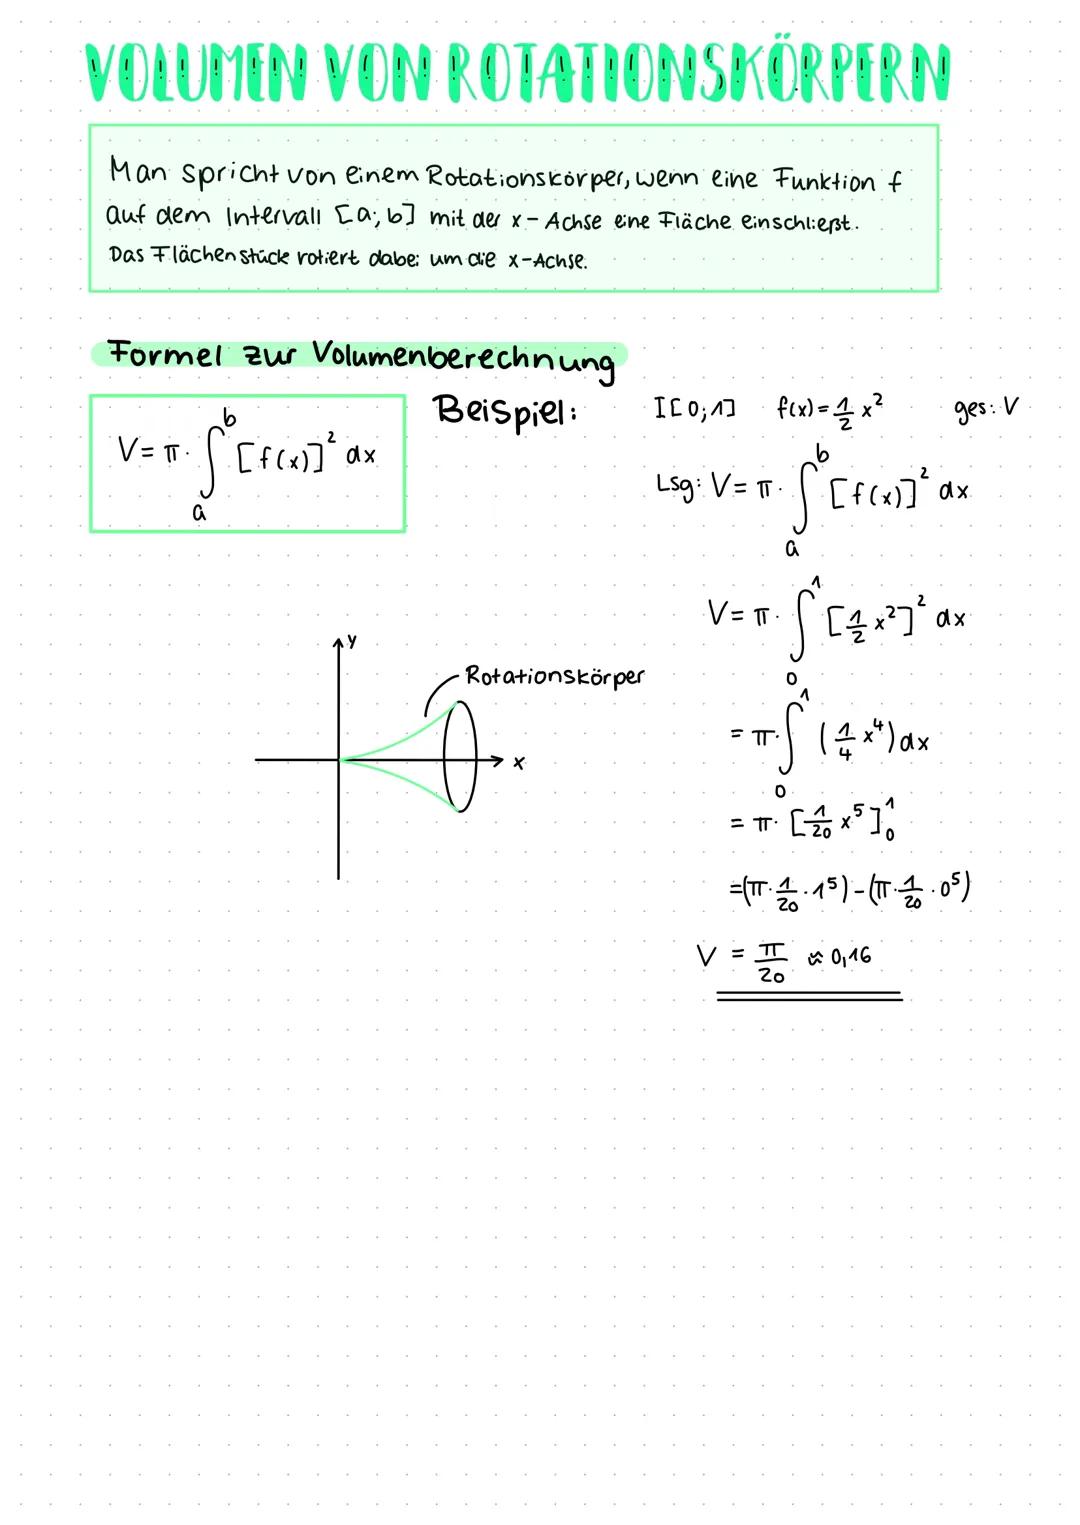 Nullstellen
Nullstellen sind die Schnittpunkte einer Funktion mit der x-Achse
Dabei gilt: f(x)=y=0
allgemeine Vorgehensweise:-Funktionsgleic